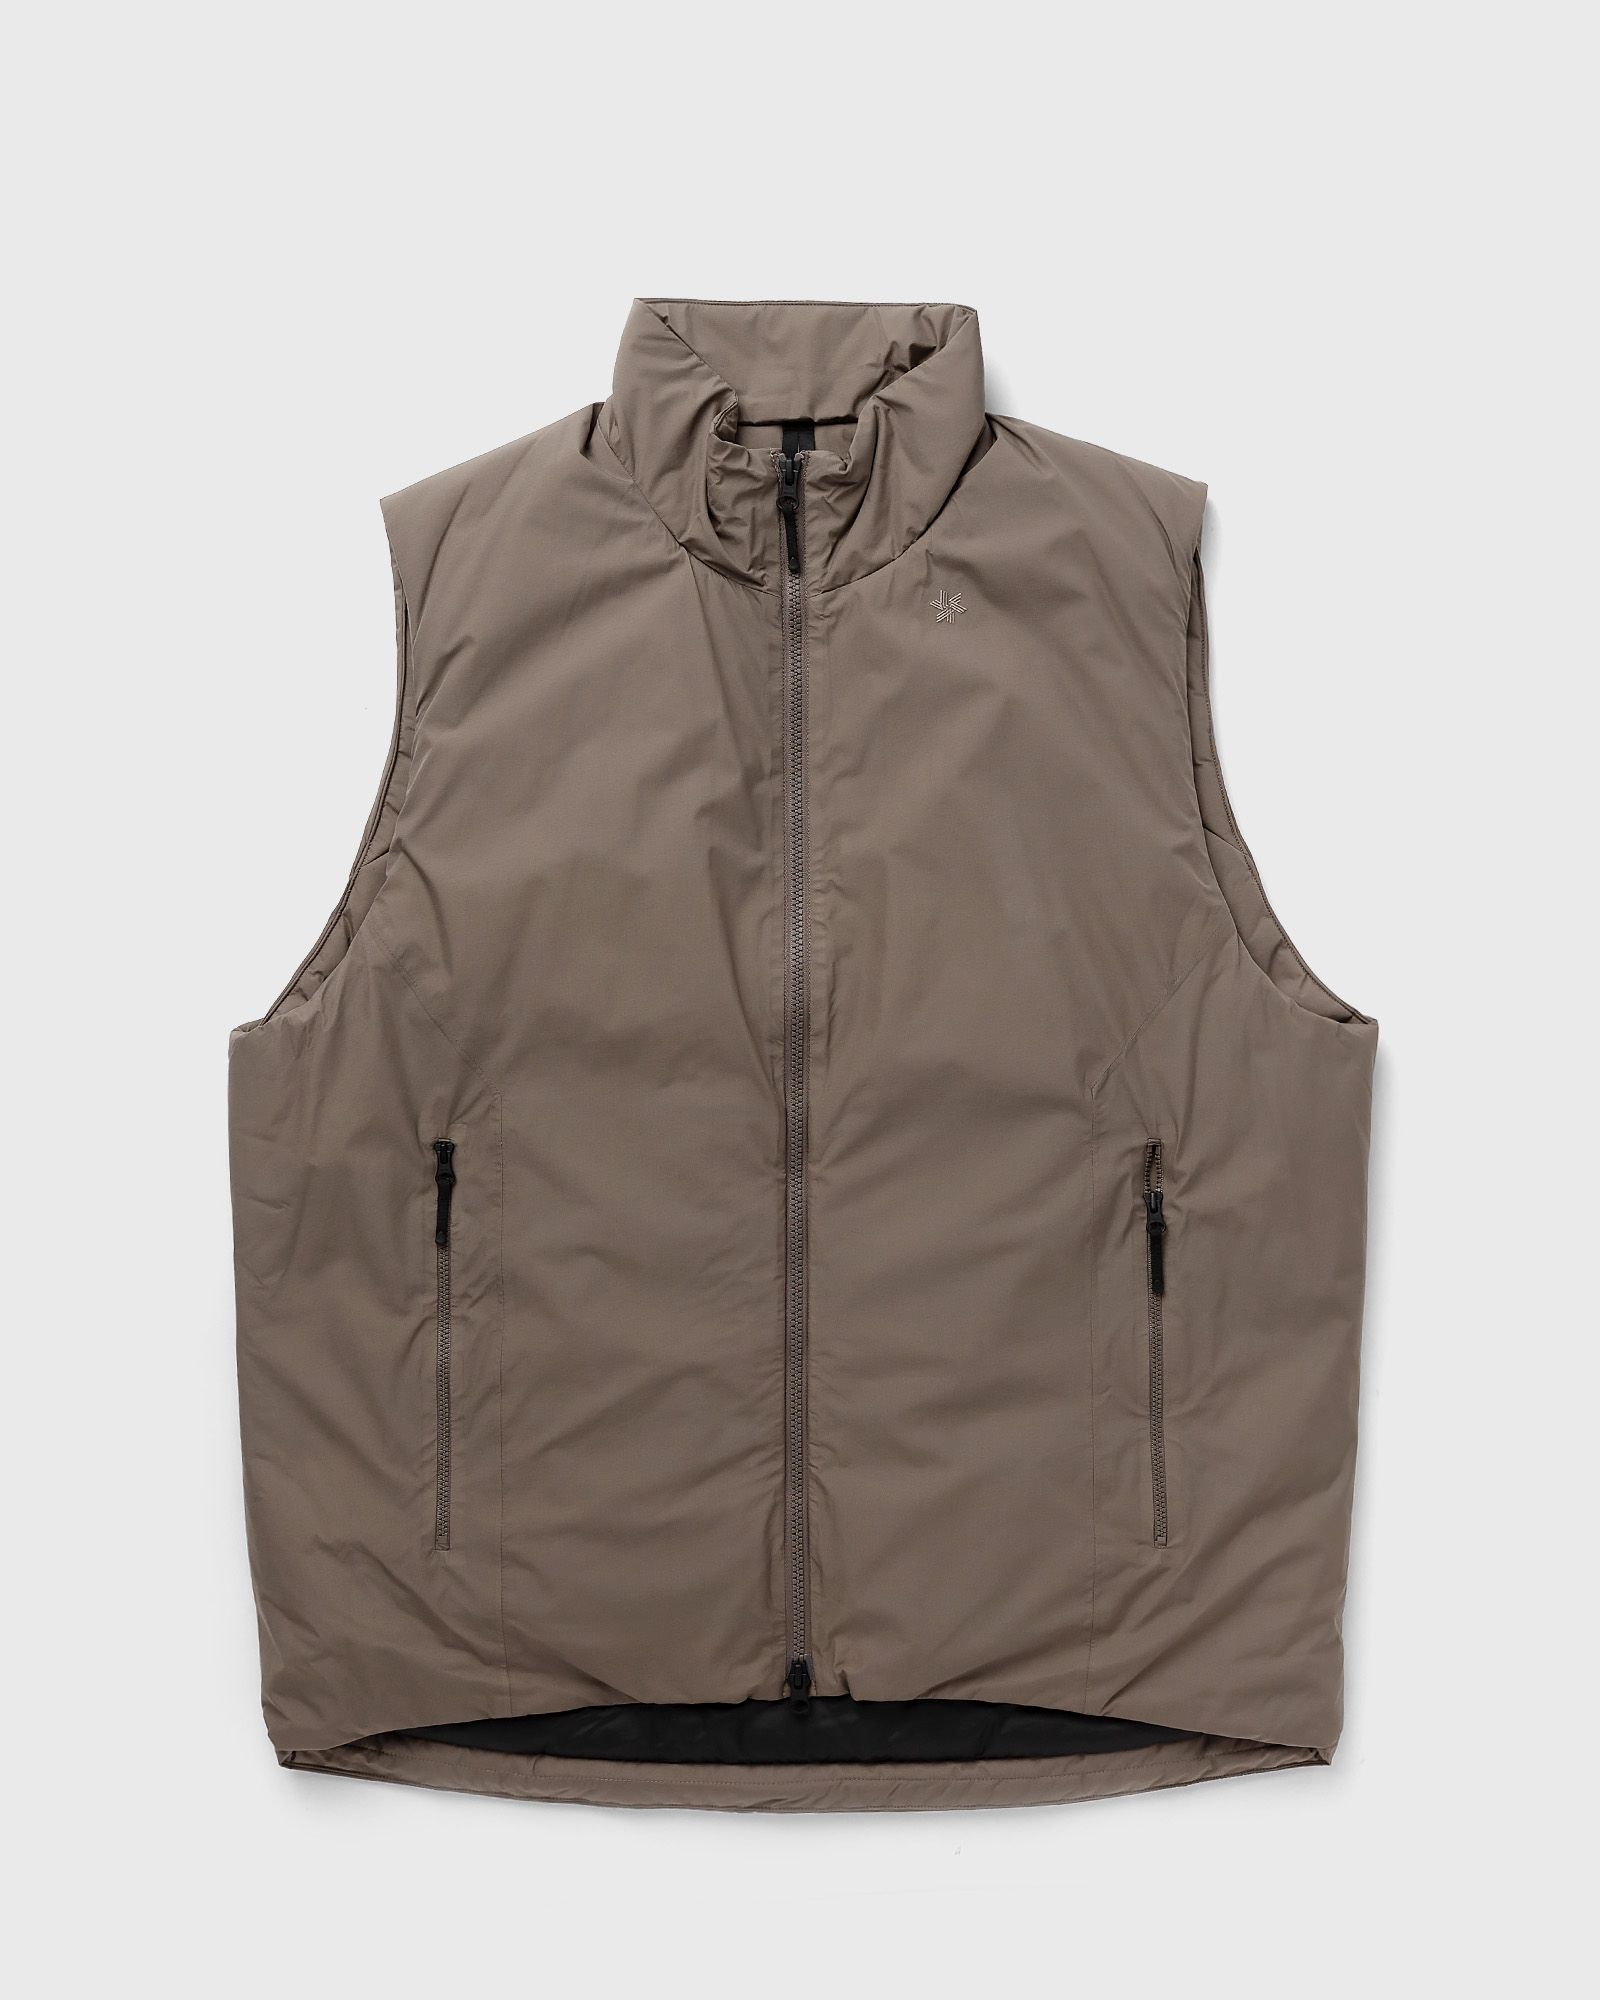 Goldwin - gore-tex windstopper puffy mil vest men vests grey in größe:l